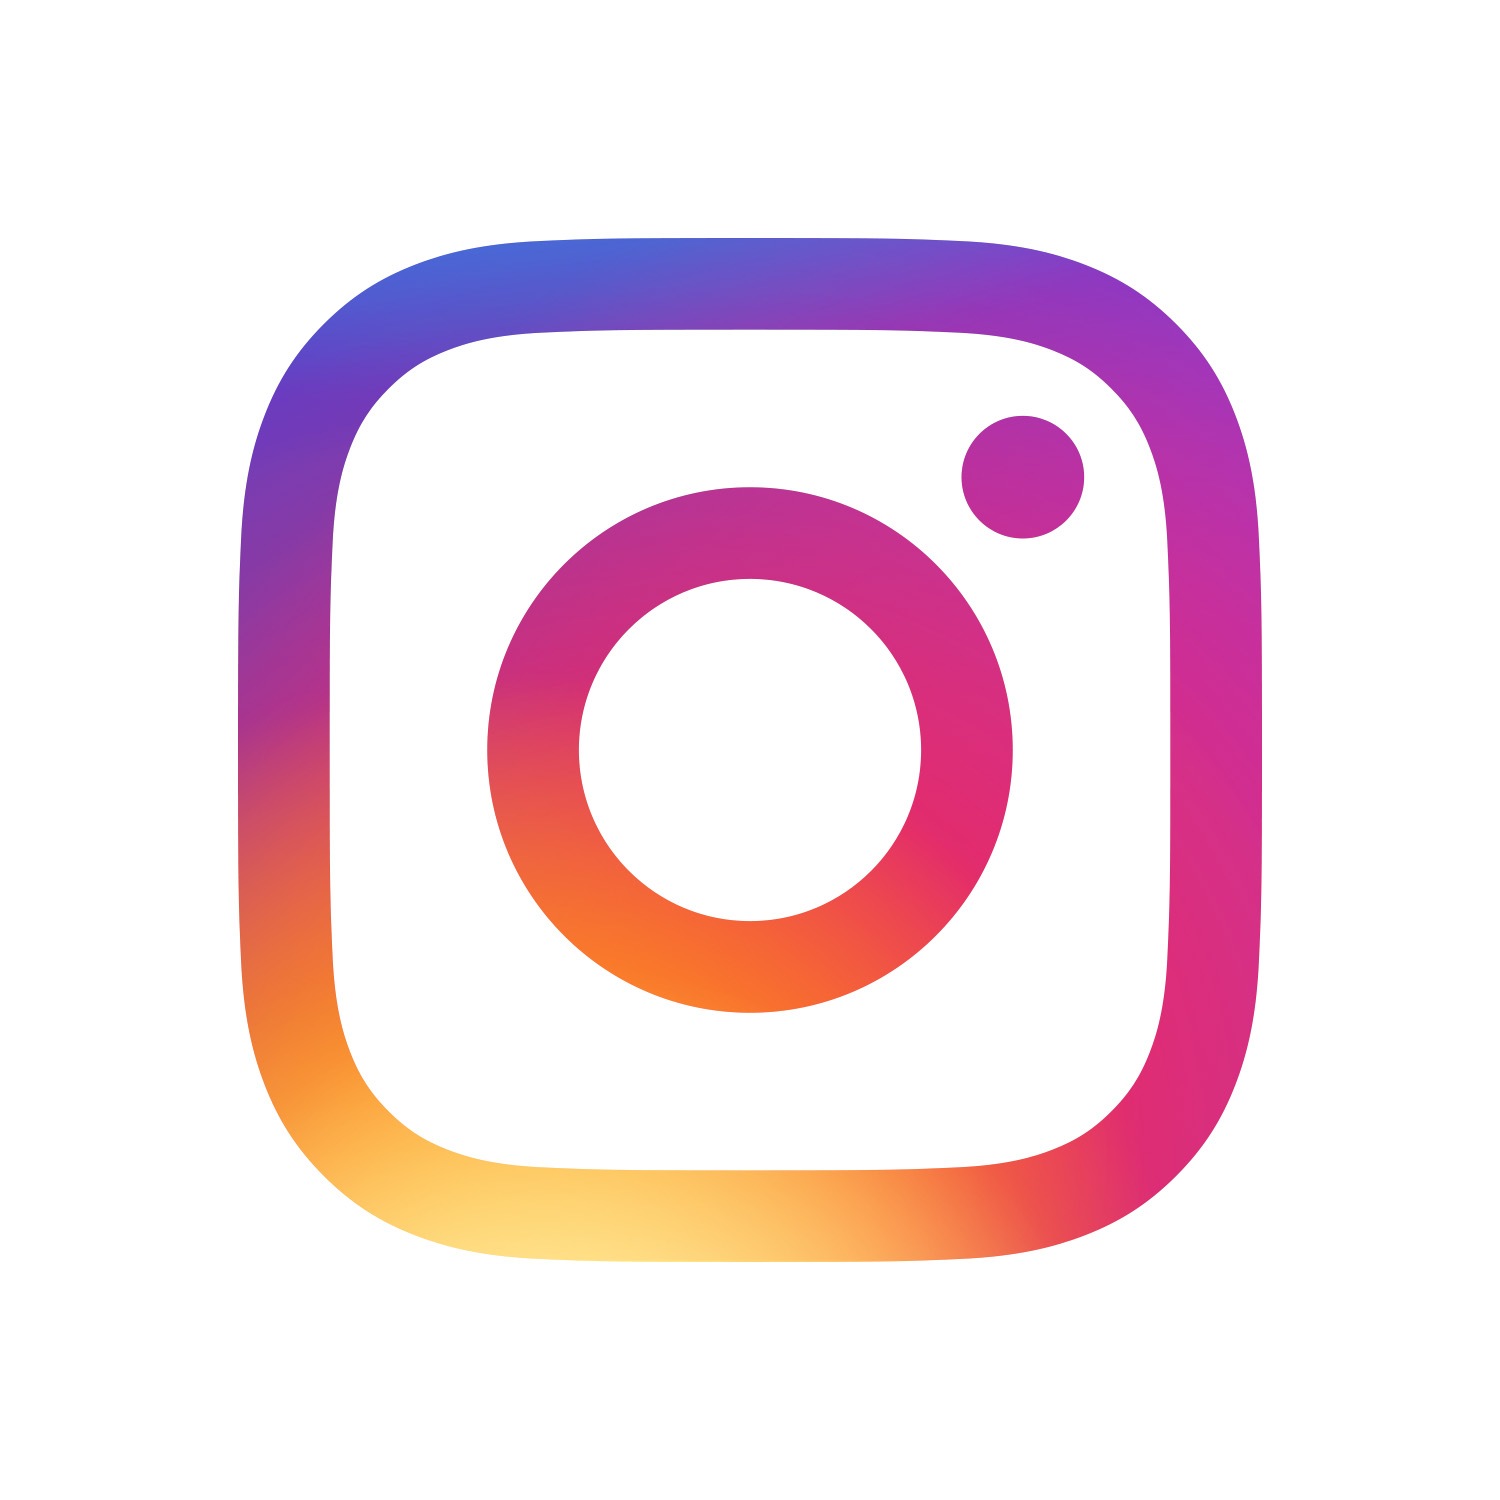 Instagram logo image download - vseum